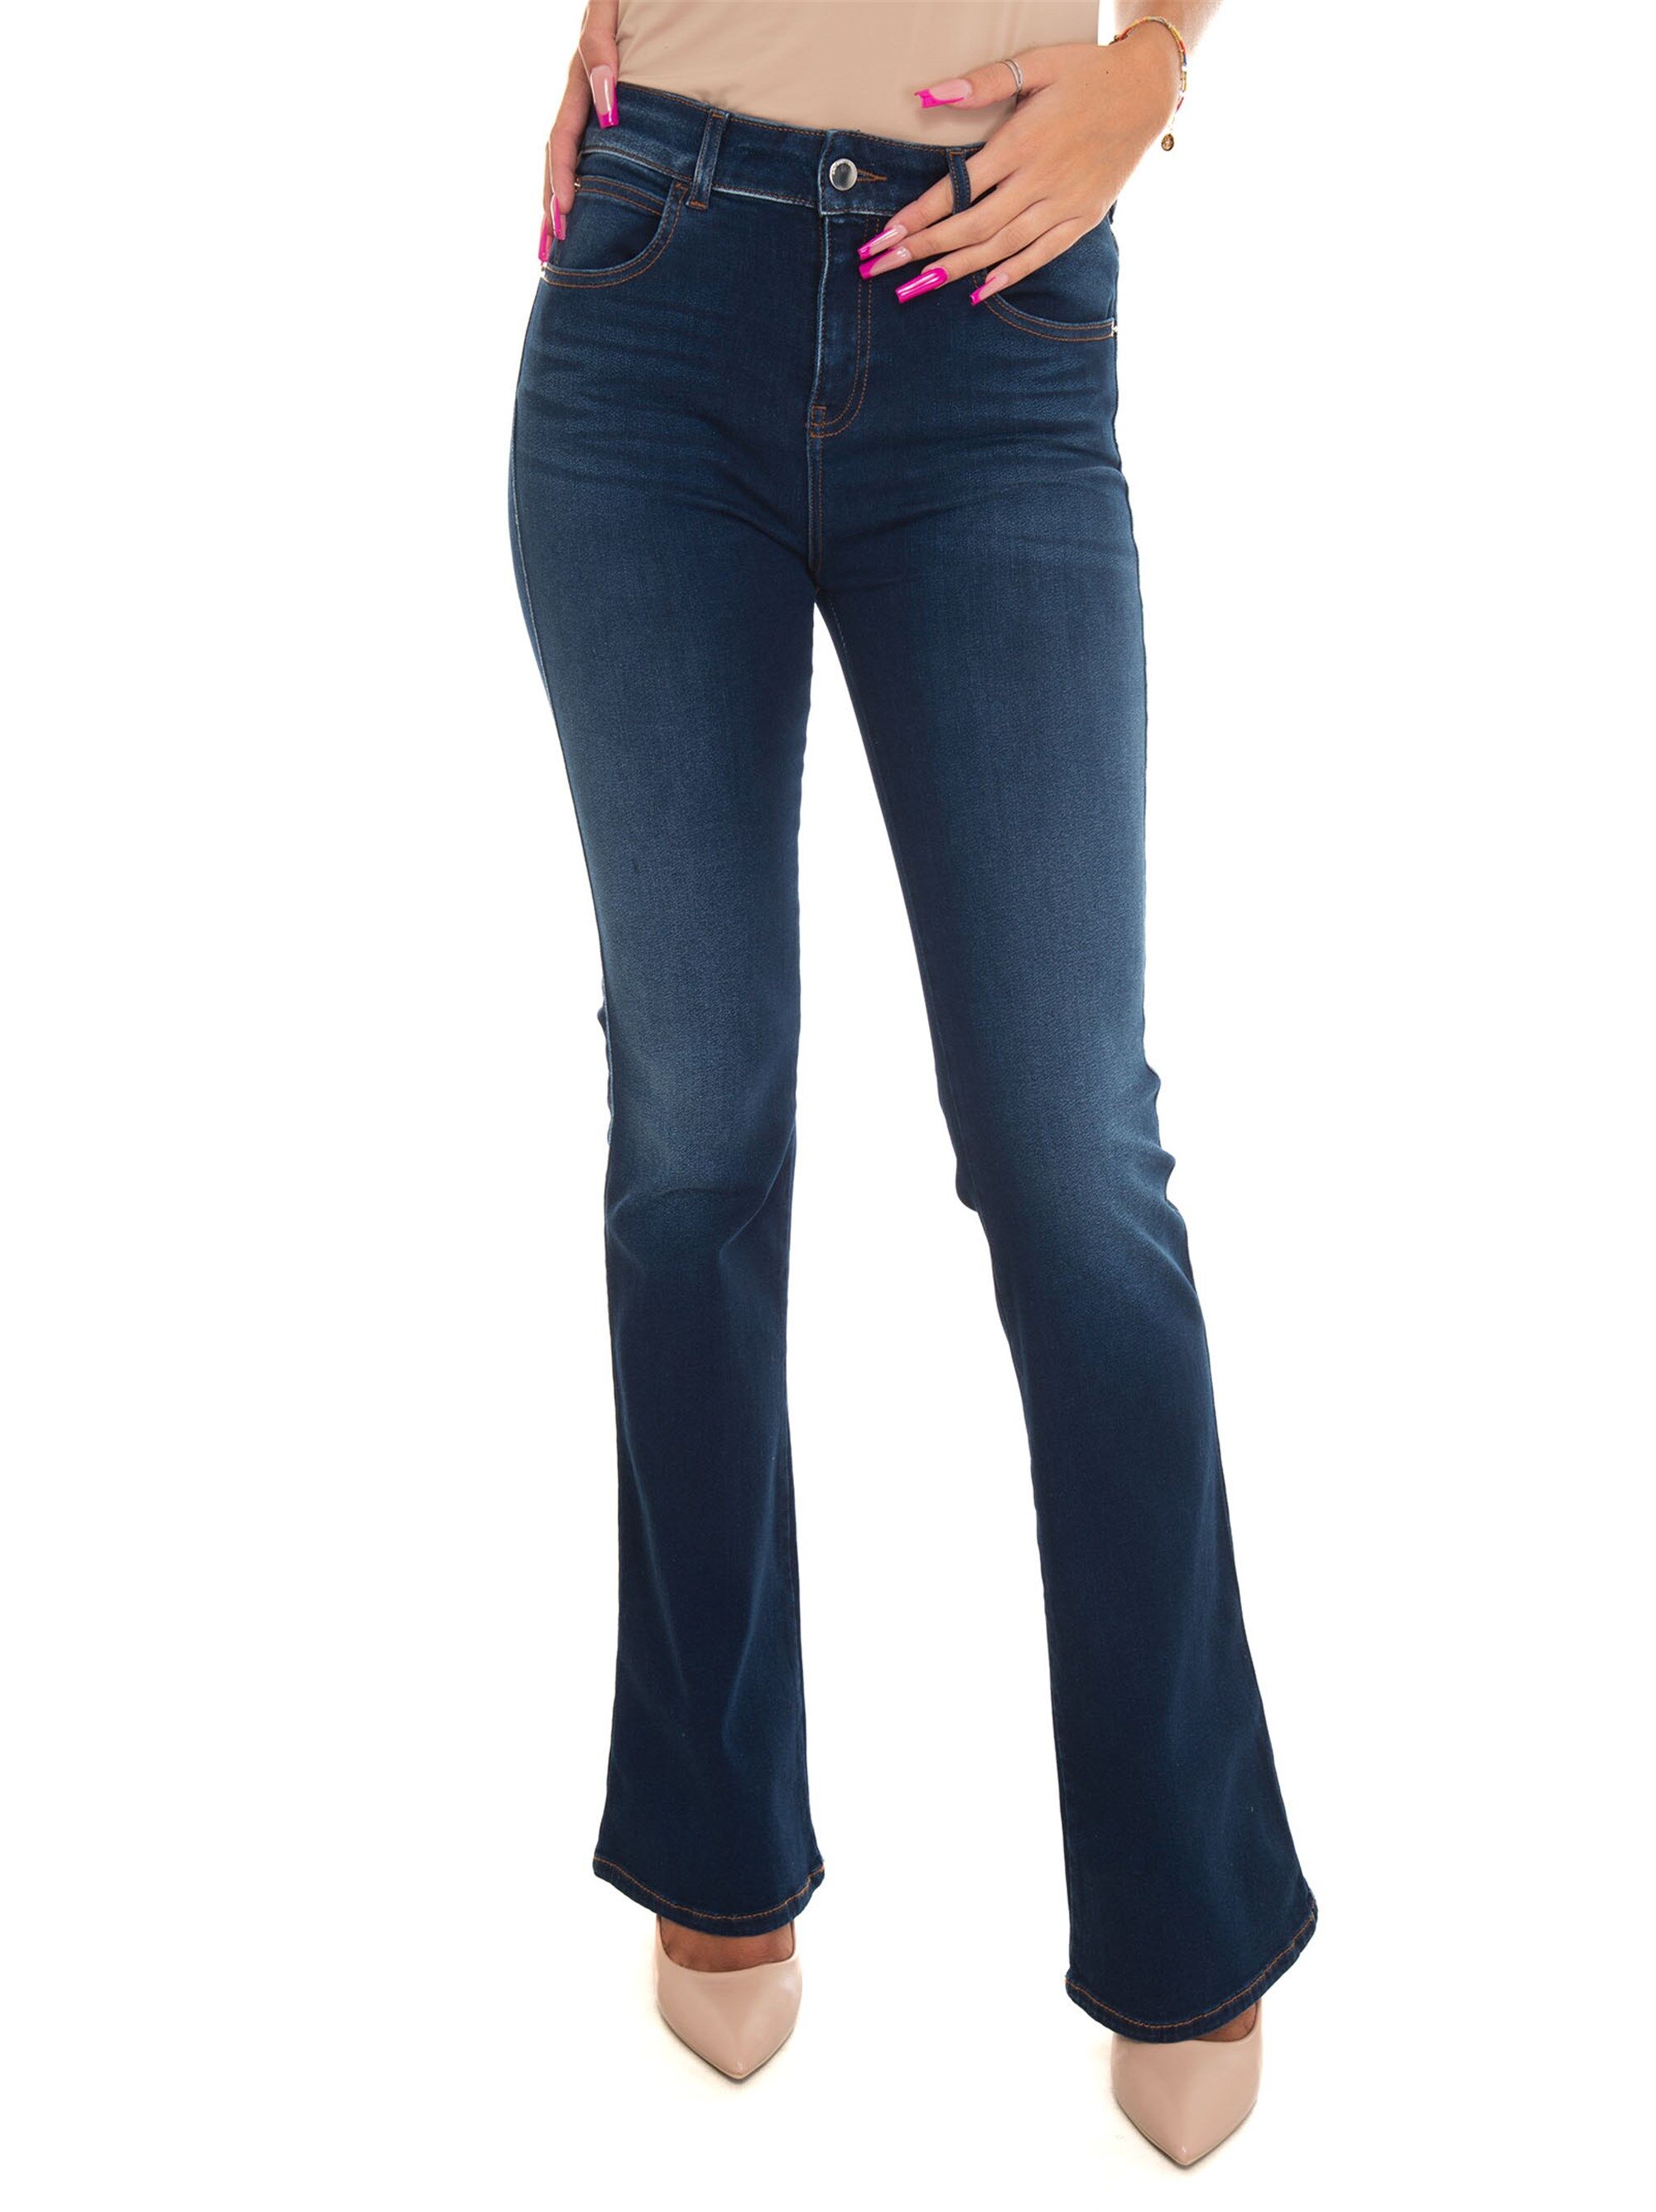 Giorgio Armani Jeans 5 tasche Blu medio Donna 27